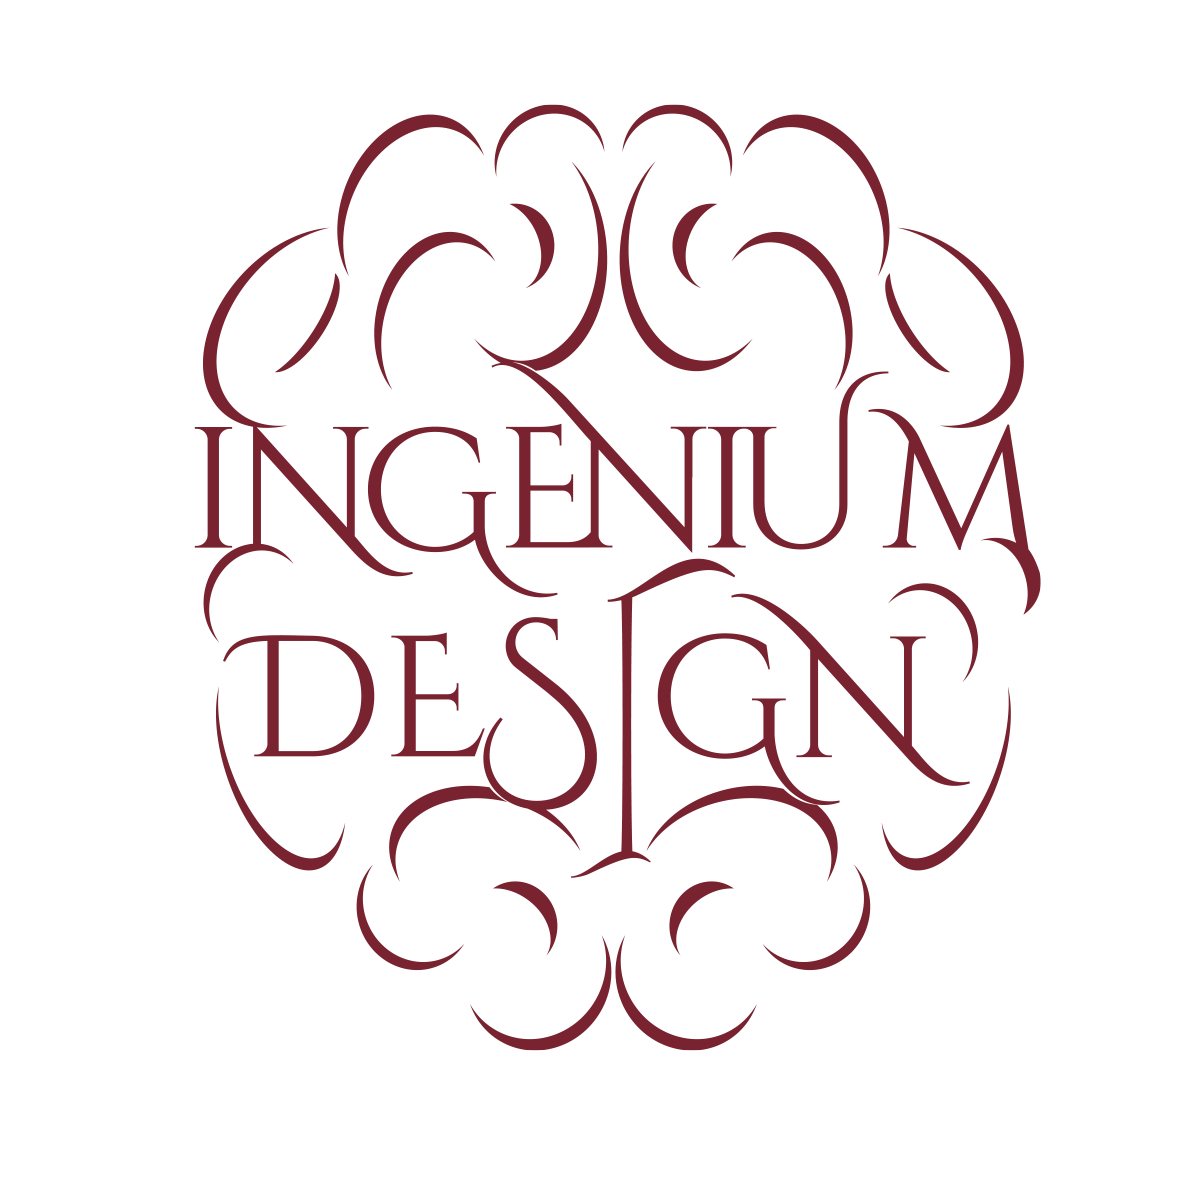 Ingenium Design